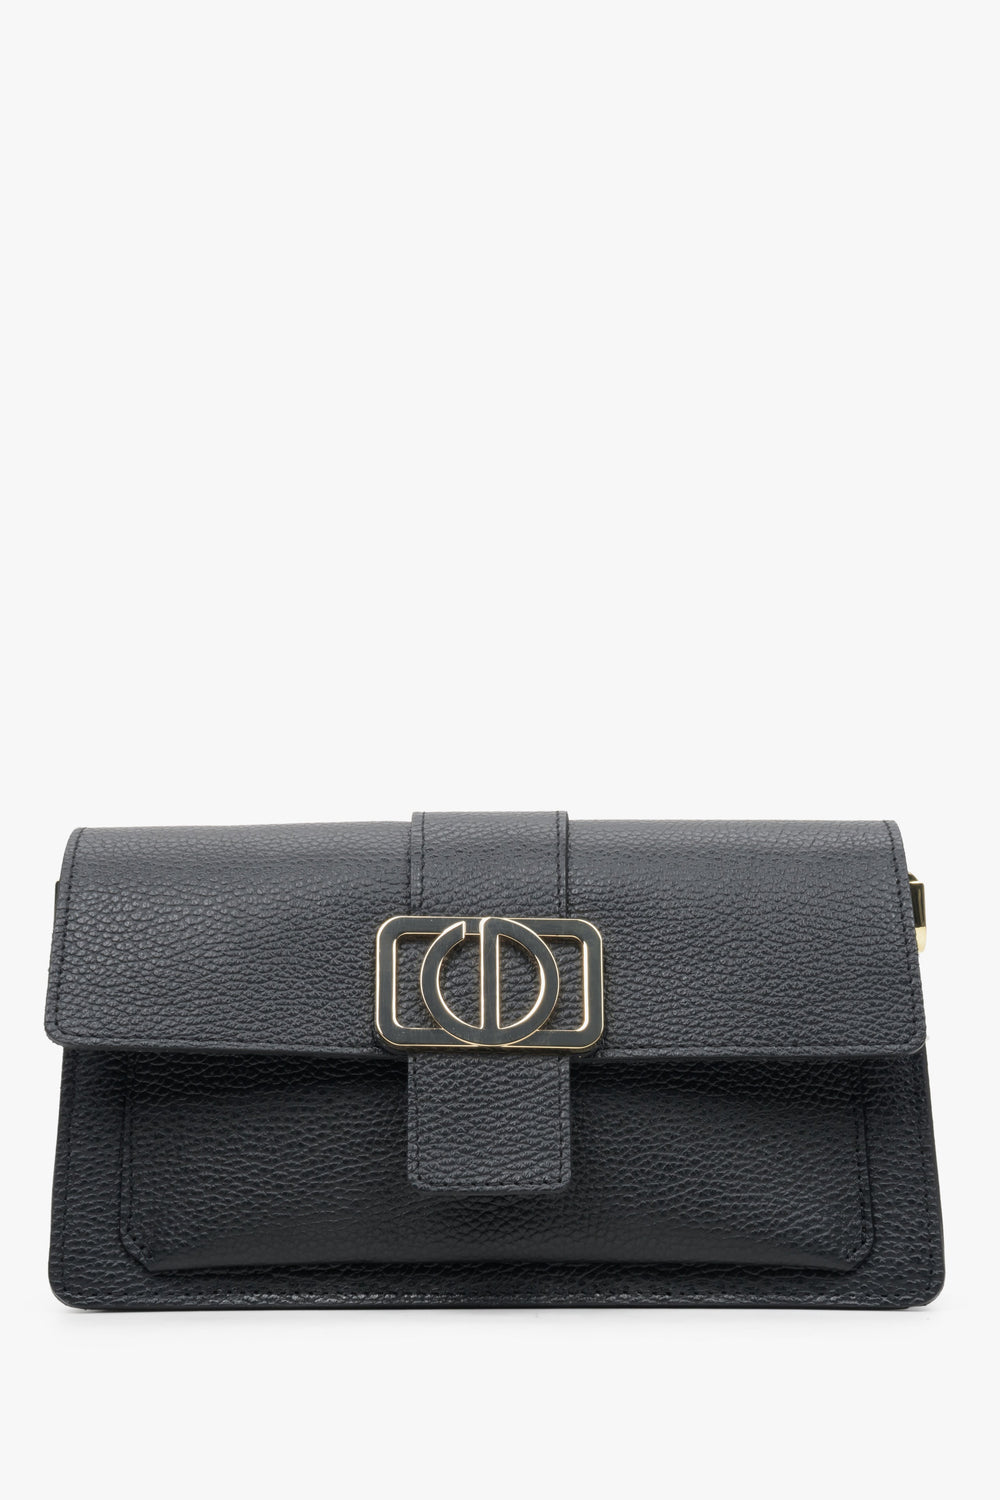 Women's Black Shoulder Bag with Gold Hardware made of Genuine Leather Estro ER00113698.